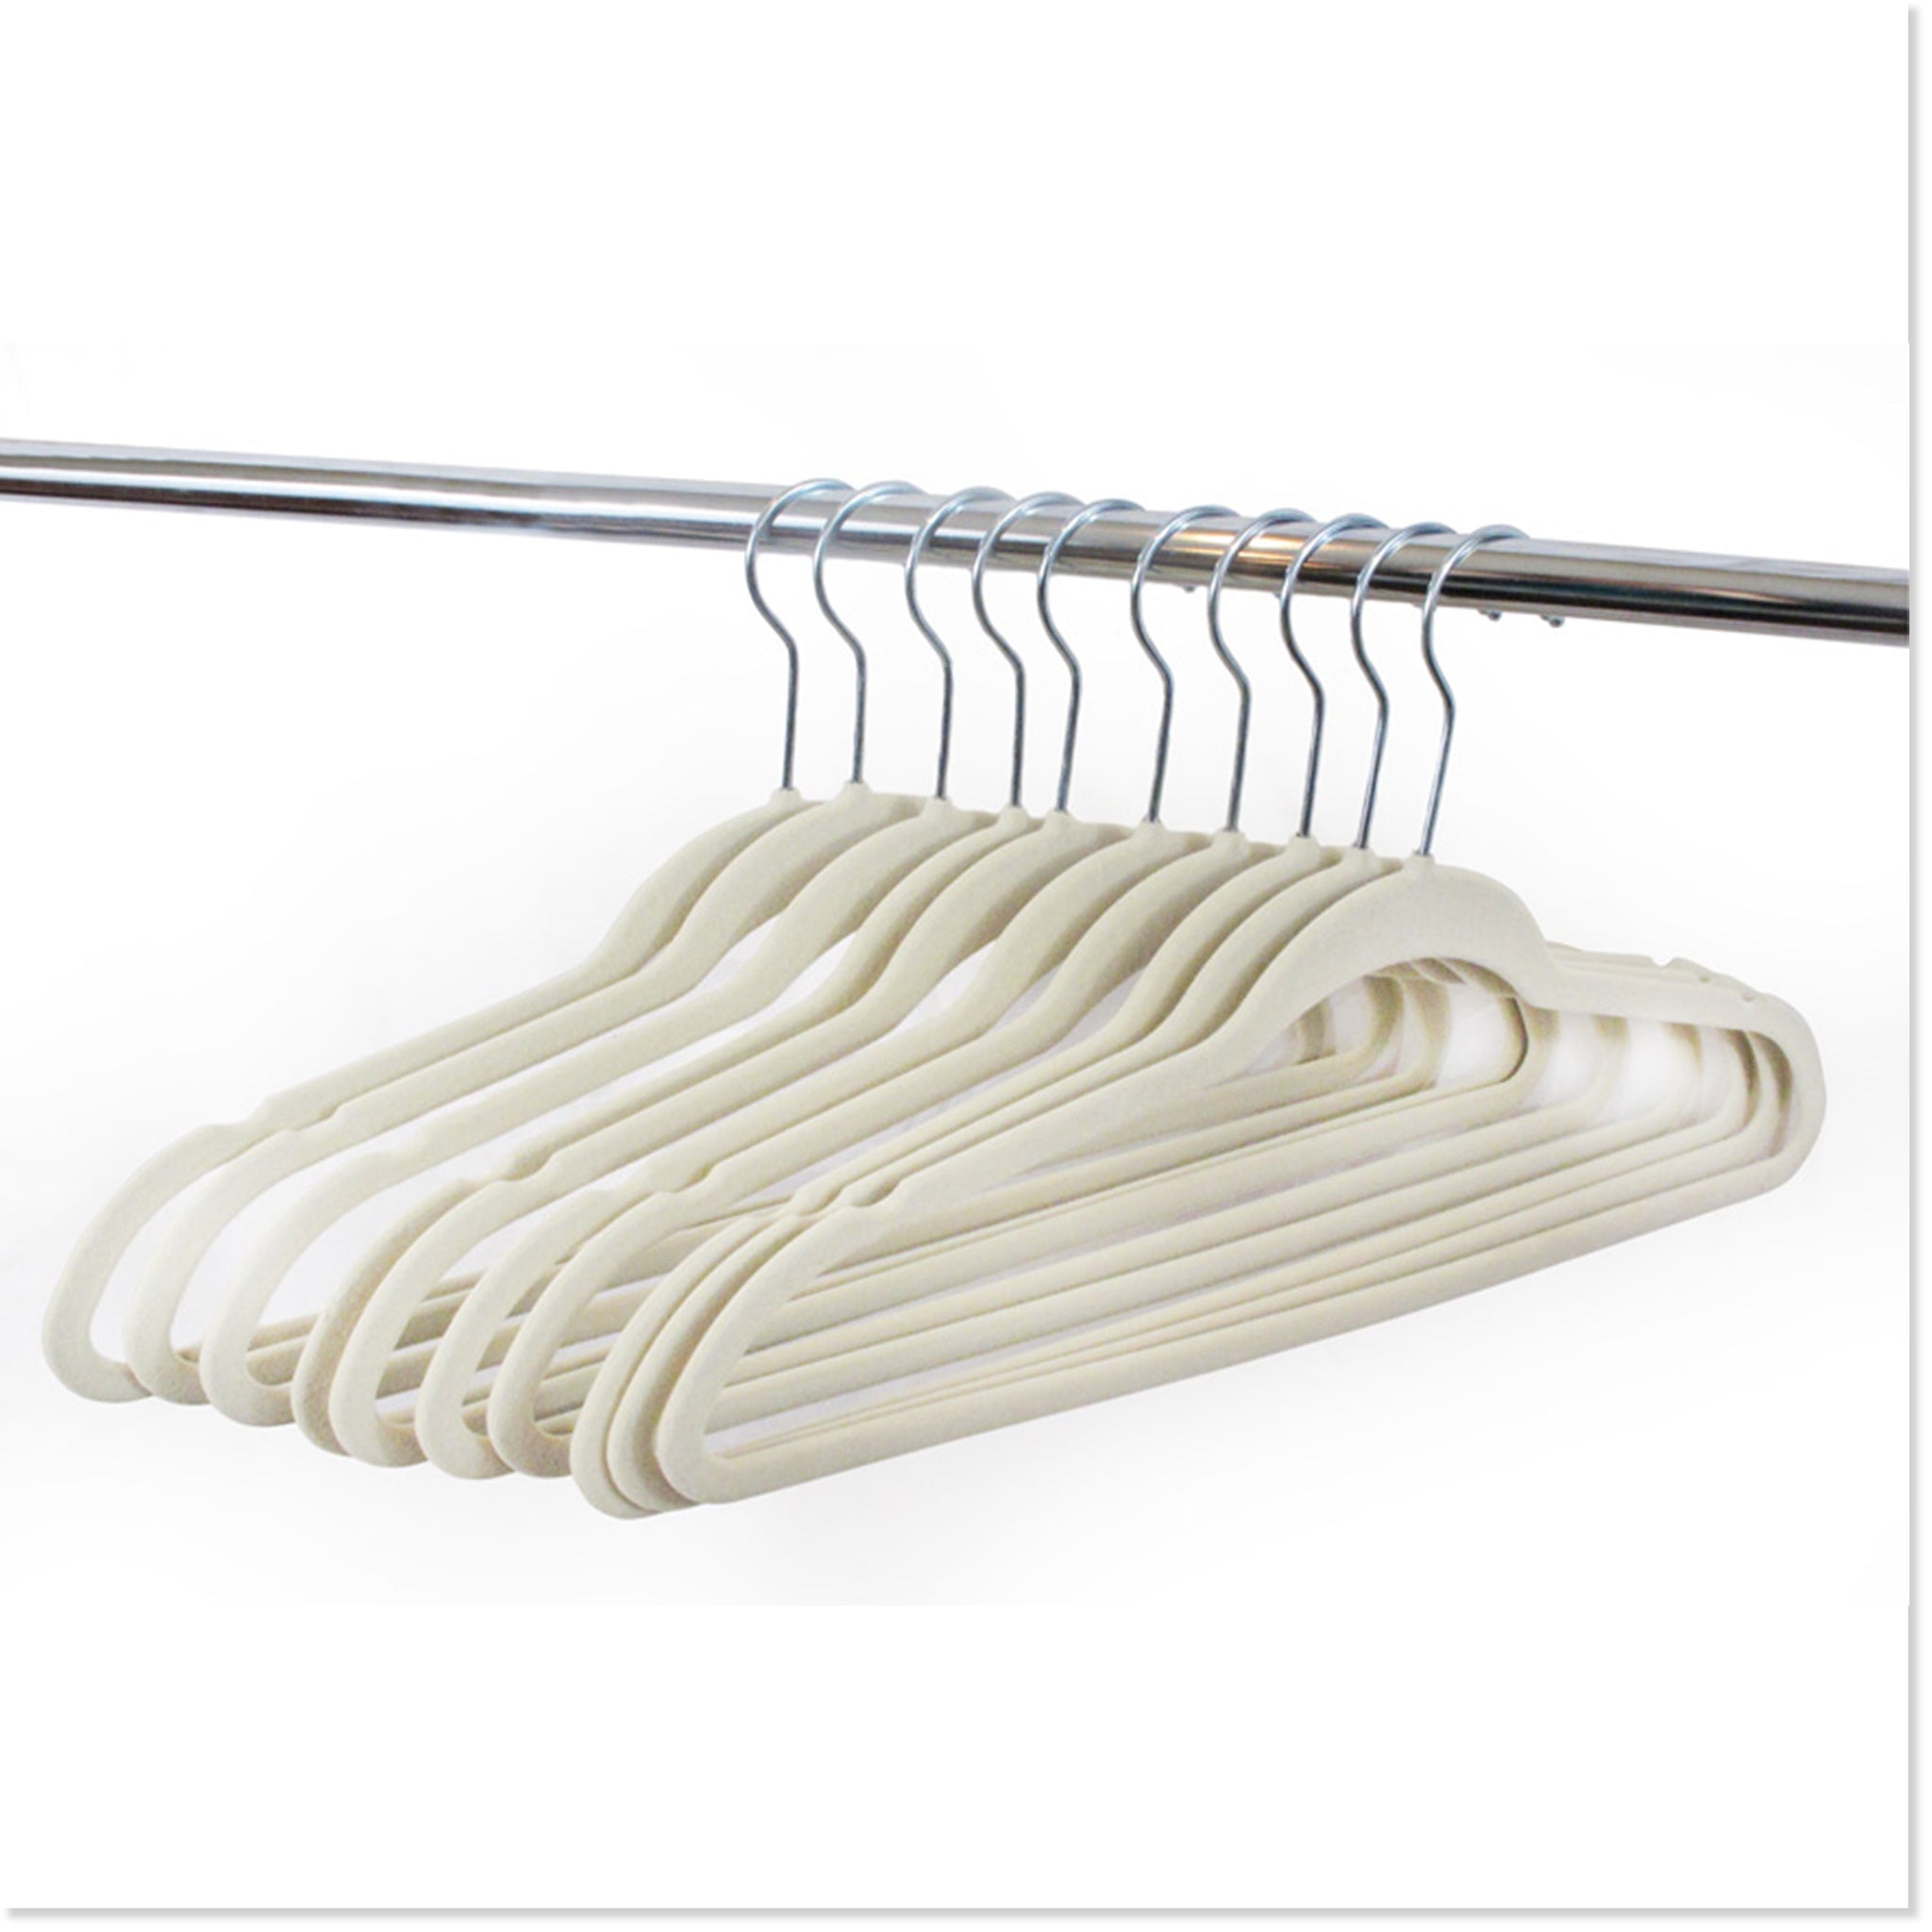 Hangers in Slate - kids metal clothes hangers